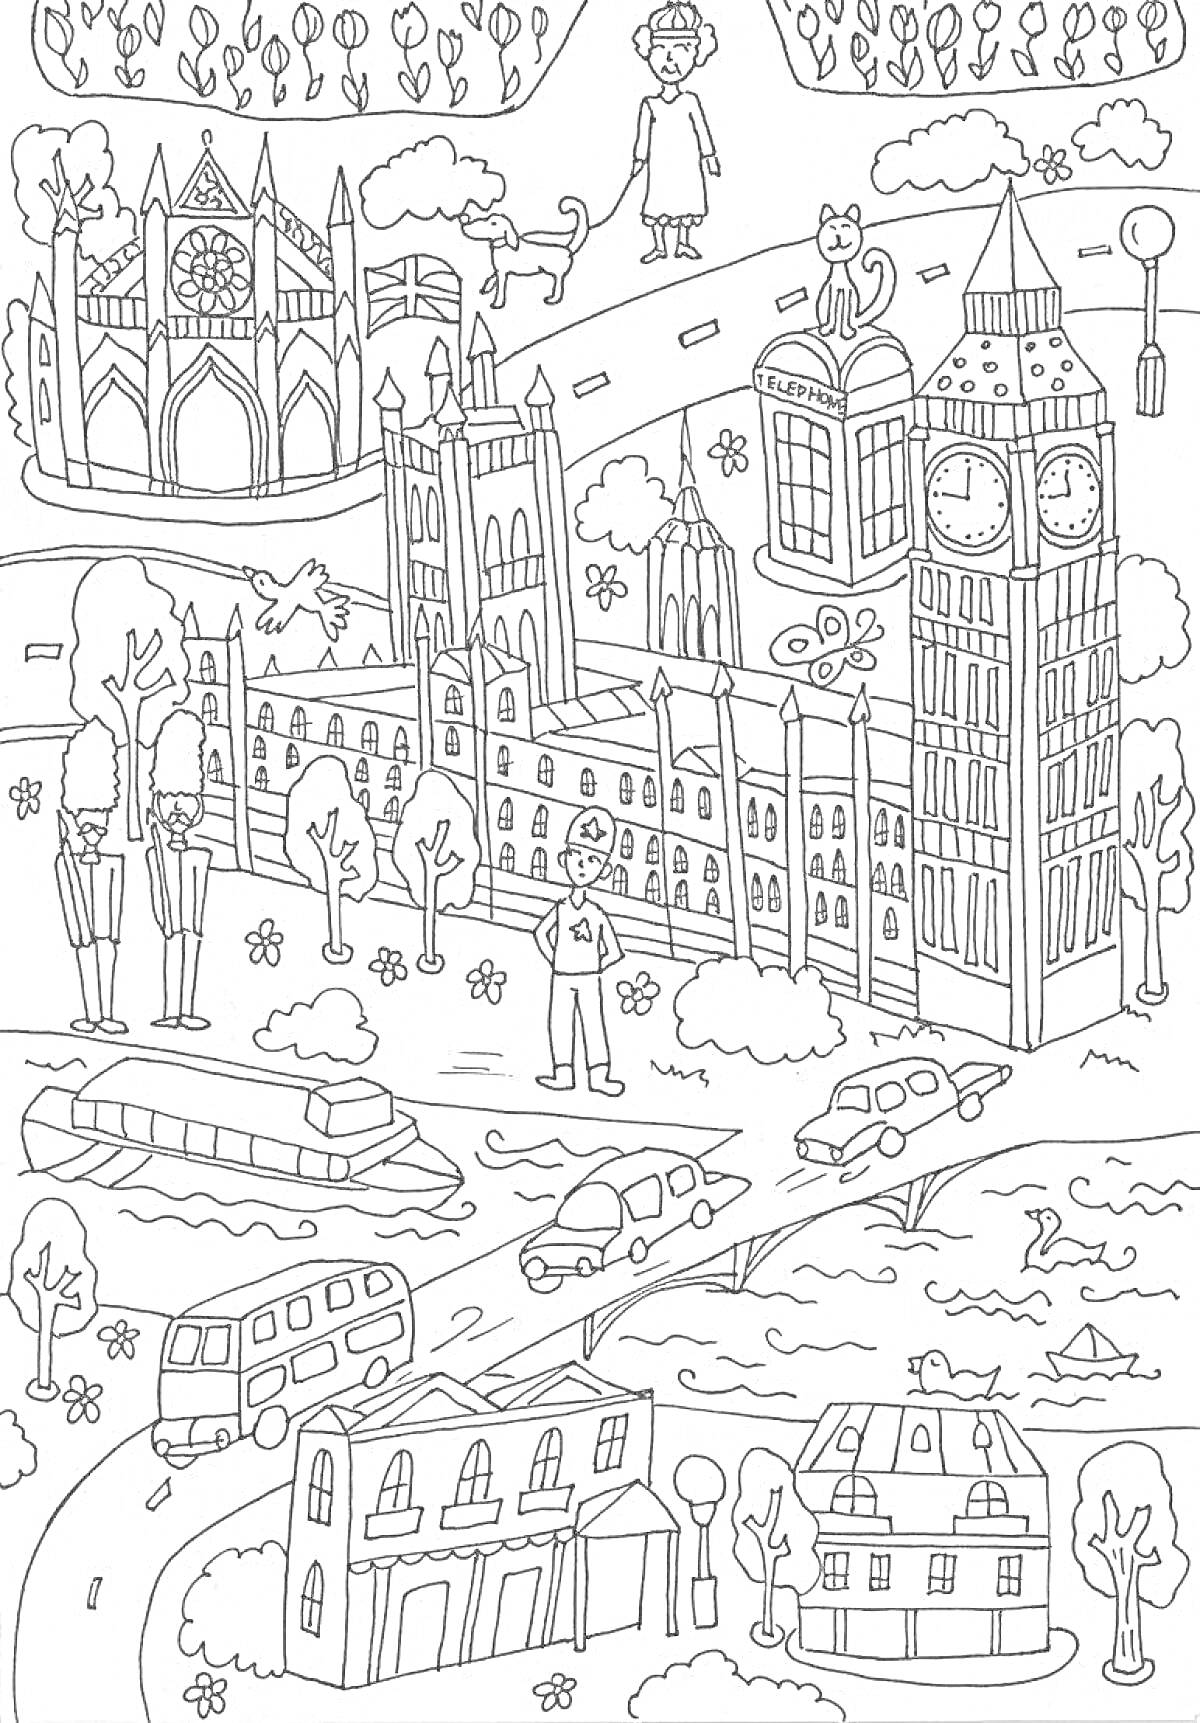 Раскраска Город мечты с часовой башней, собором, парком, людьми, речкой и транспортом